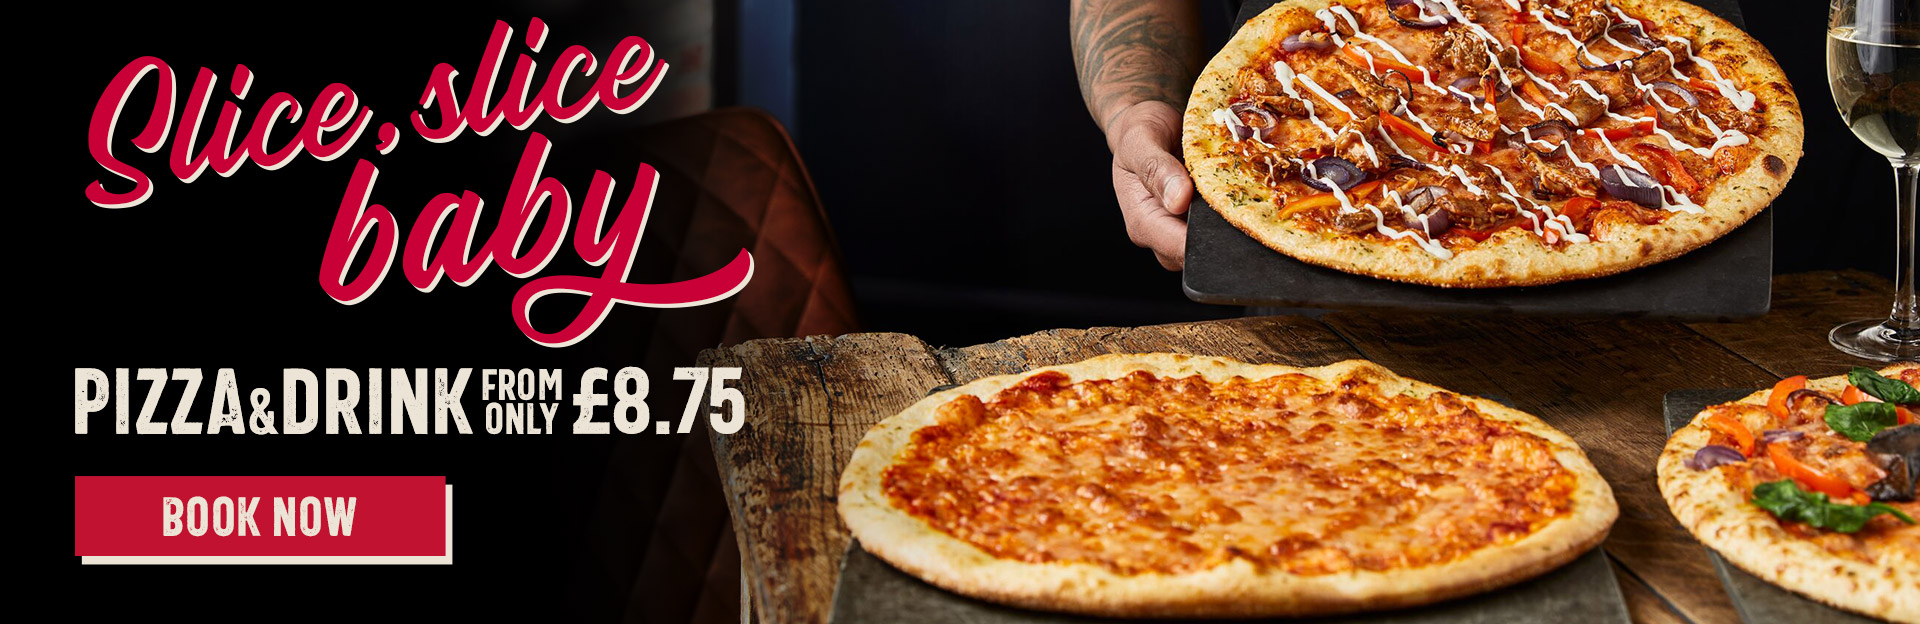 oneills-offers-pizzaanddrink-banner-8.75.jpg